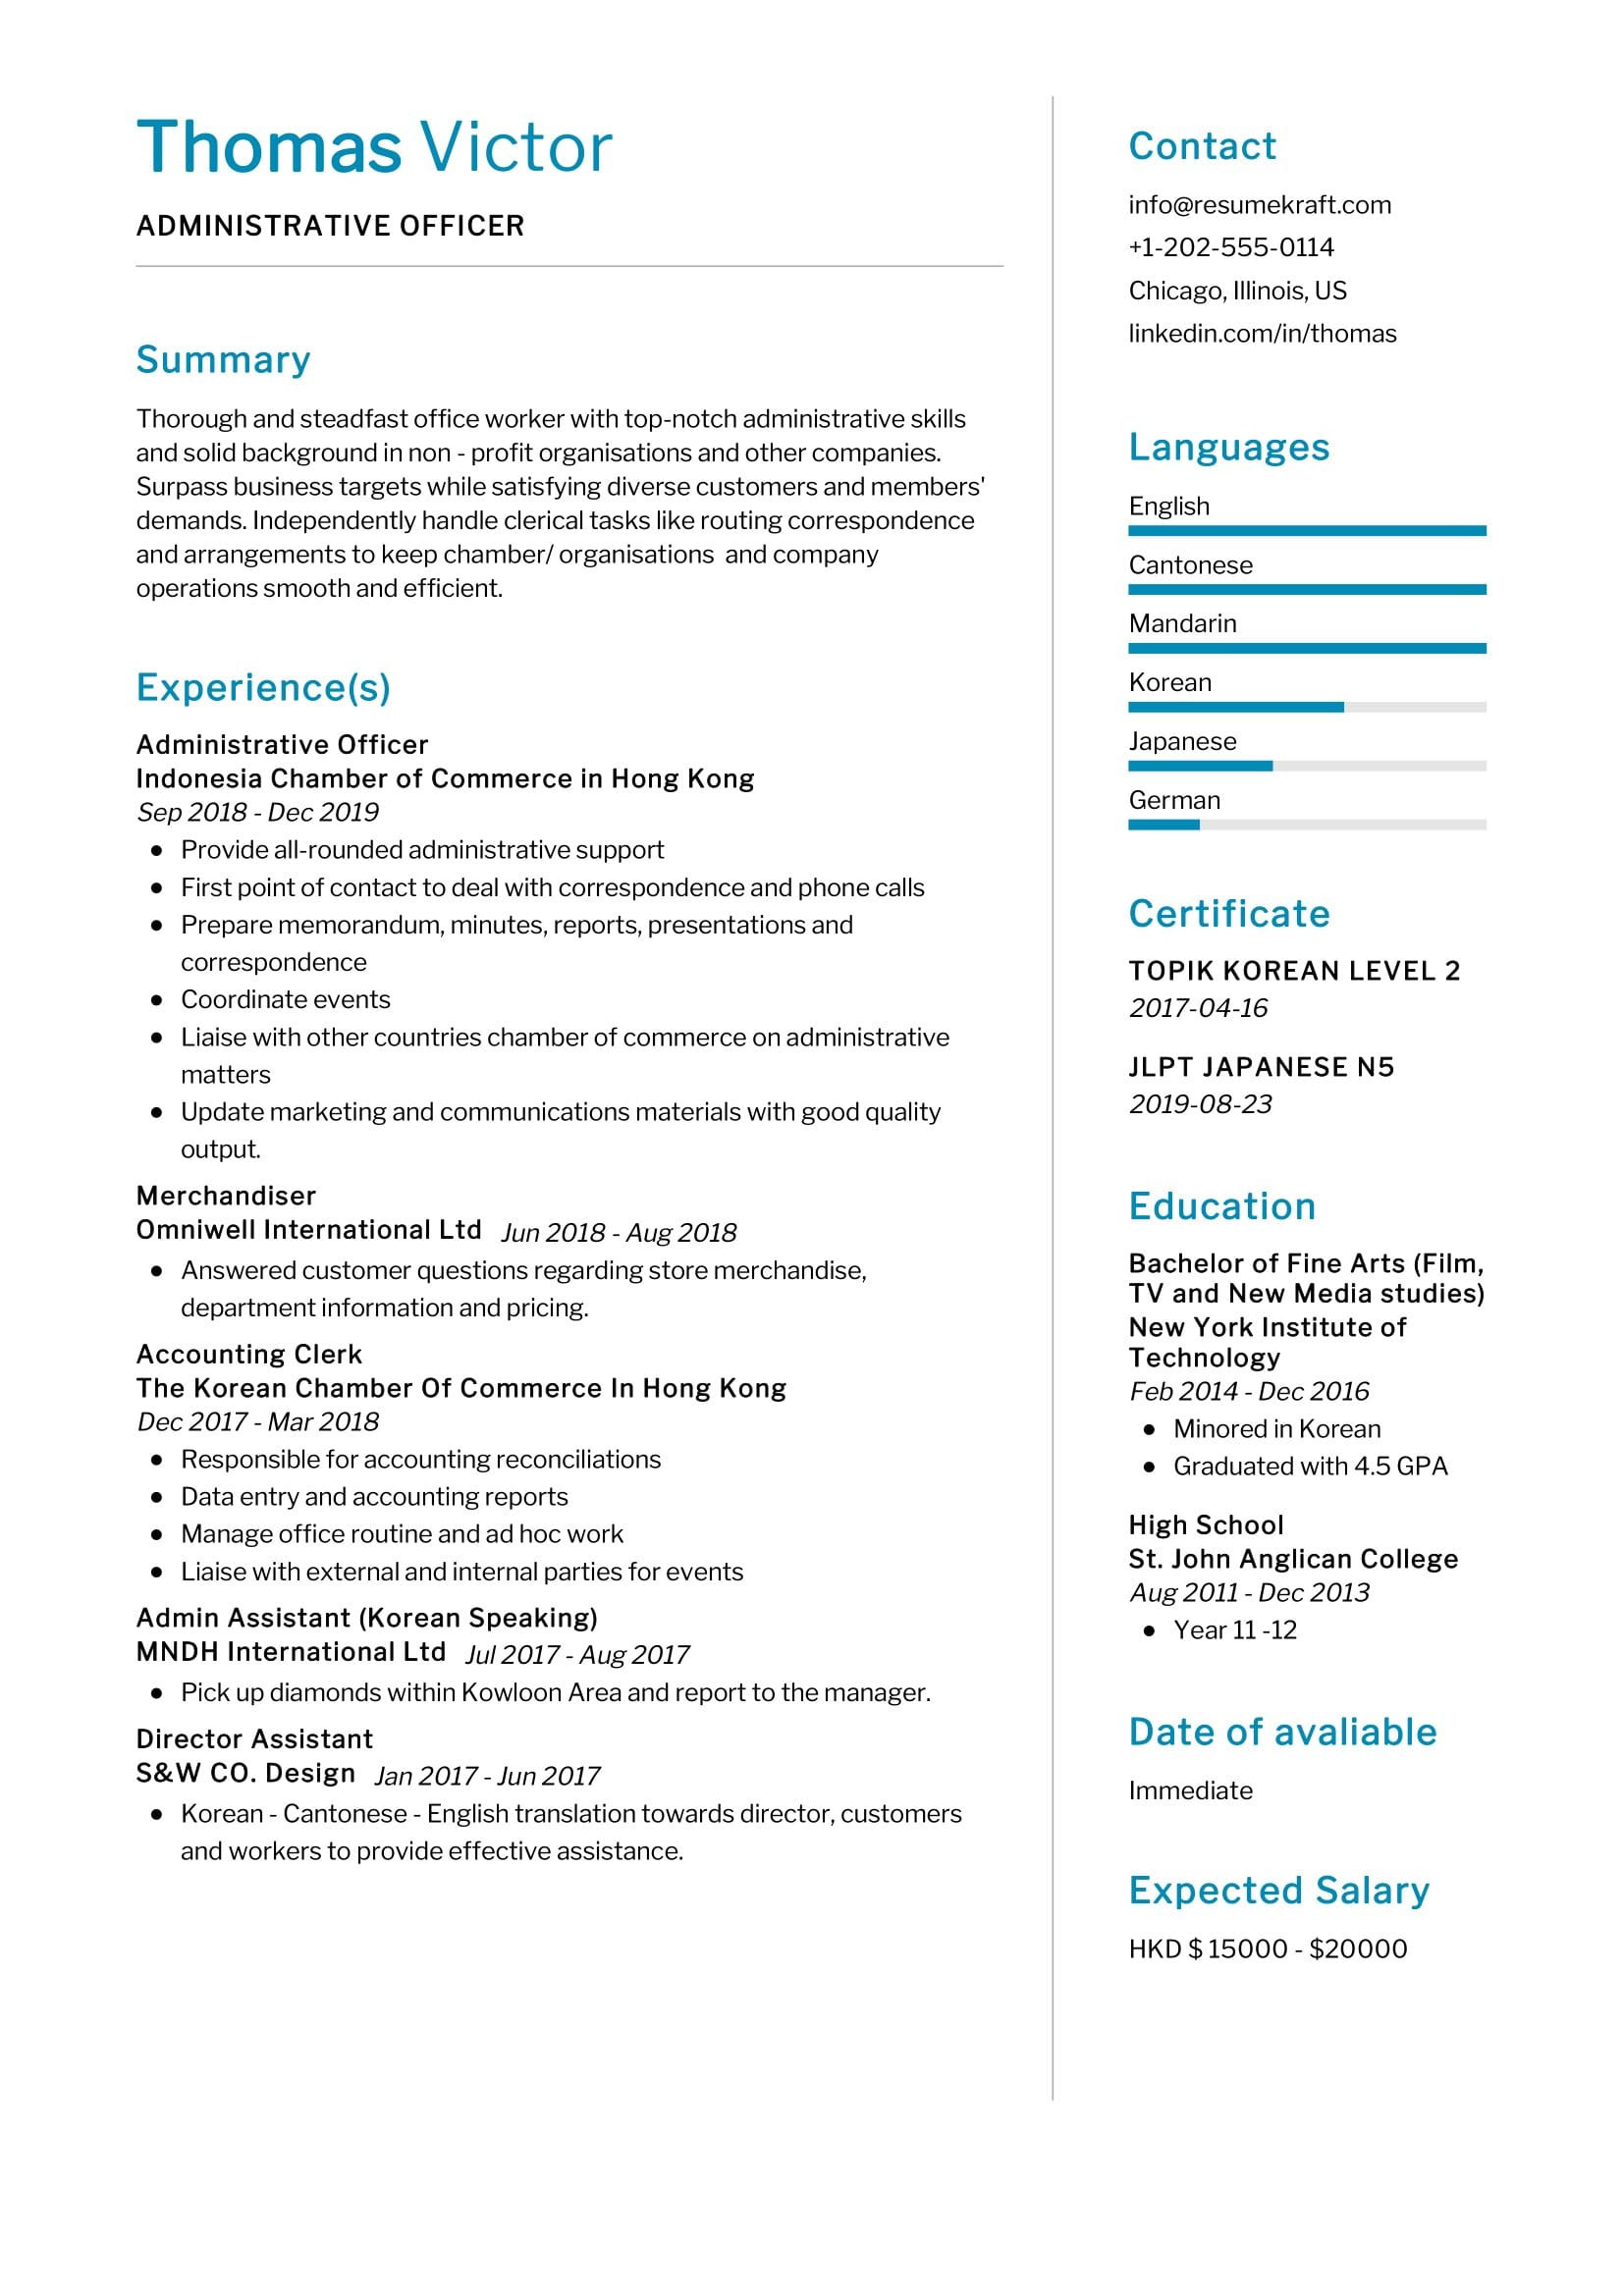 Sample Resume for Senior Administrative Officer Administrative Officer Resume Sample 2022 Writing Tips – Resumekraft